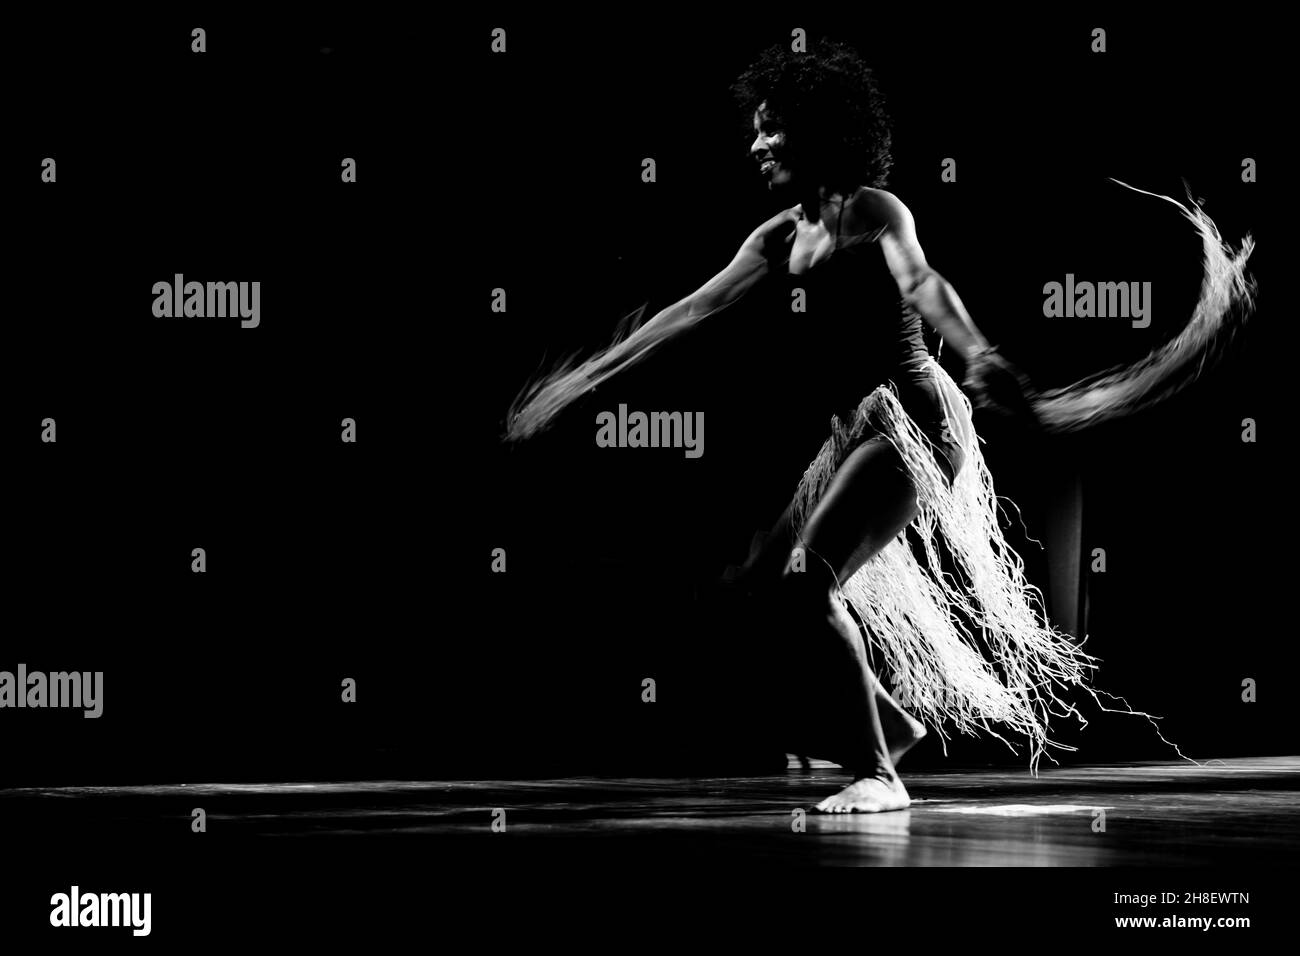 Ritratto in bianco e nero di una donna che balla sul palco su sfondo nero. Salvador, Bahia, Brasile. Foto Stock